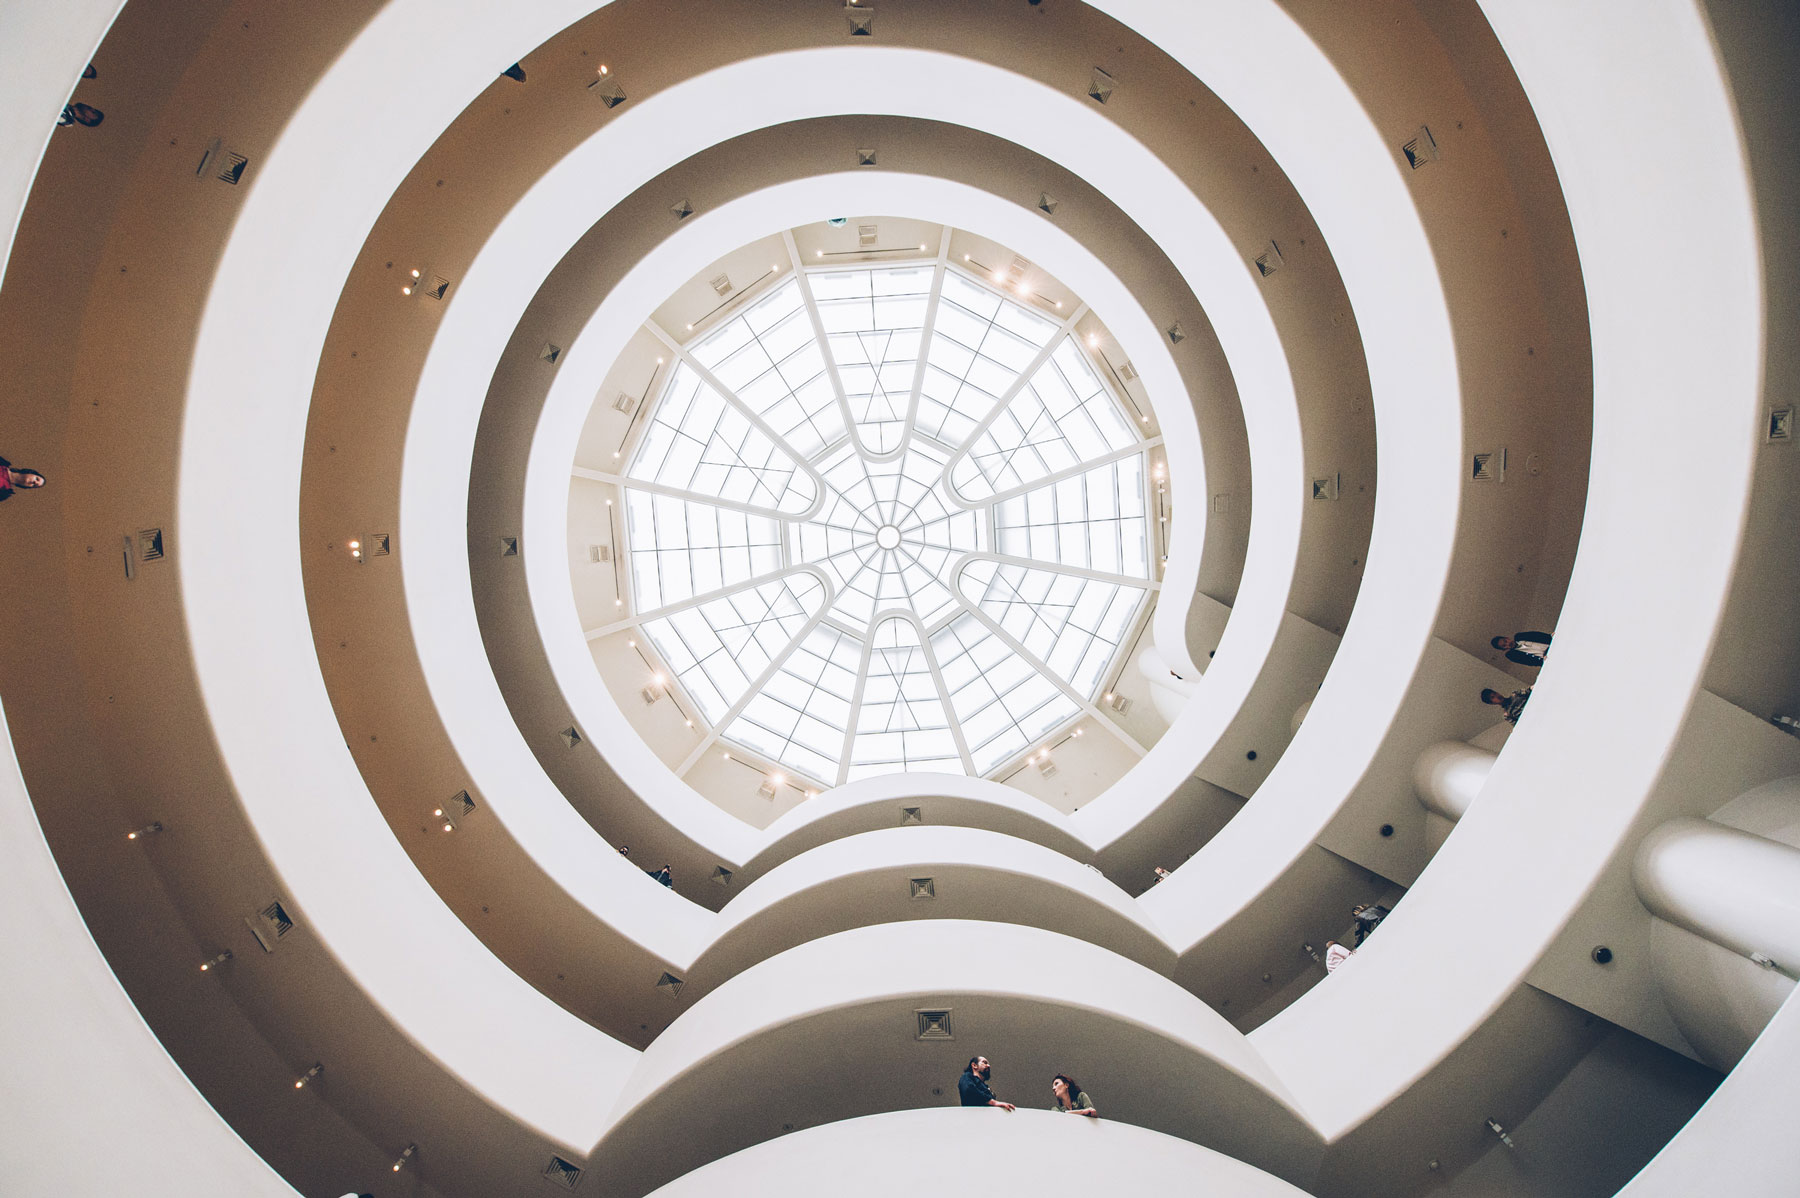 Quel musée choisir à New York? Le Guggenheim?